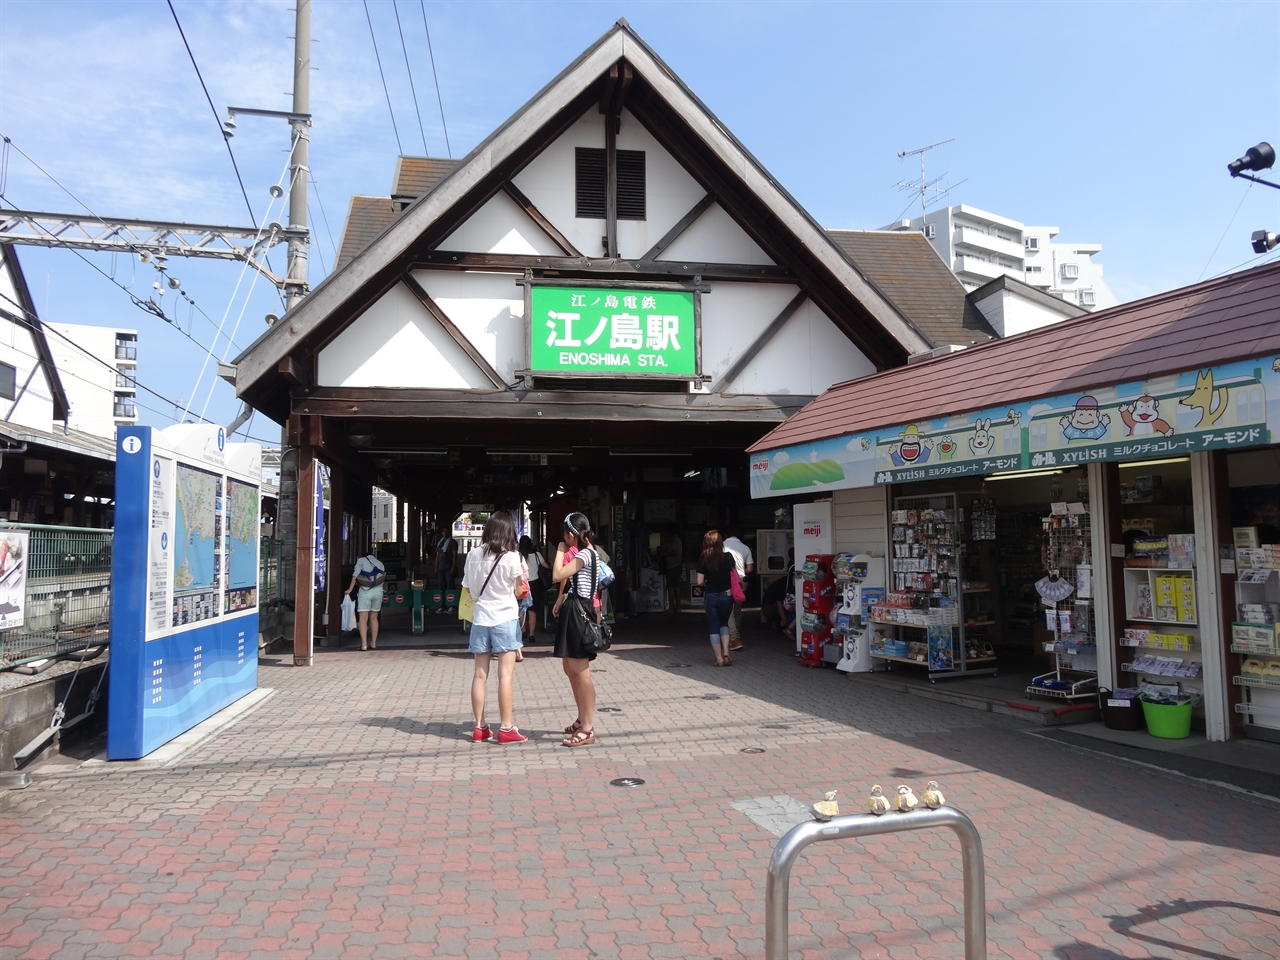  에노덴 관광의 거점인 에노시마역.